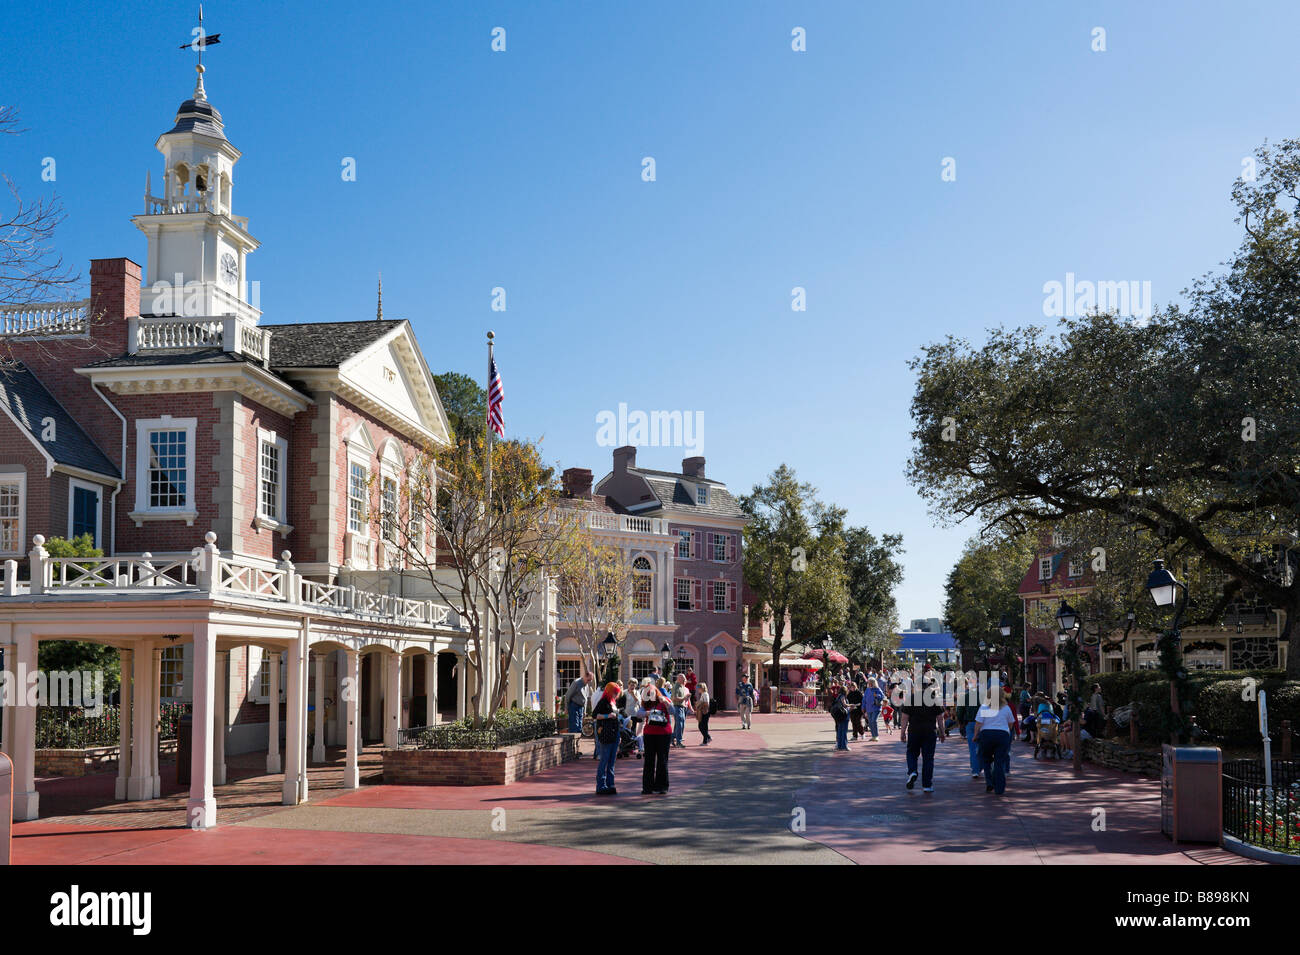 Place de la liberté, Magic Kingdom, Walt Disney World Resort, Lake Buena Vista, Orlando, Floride, USA Banque D'Images